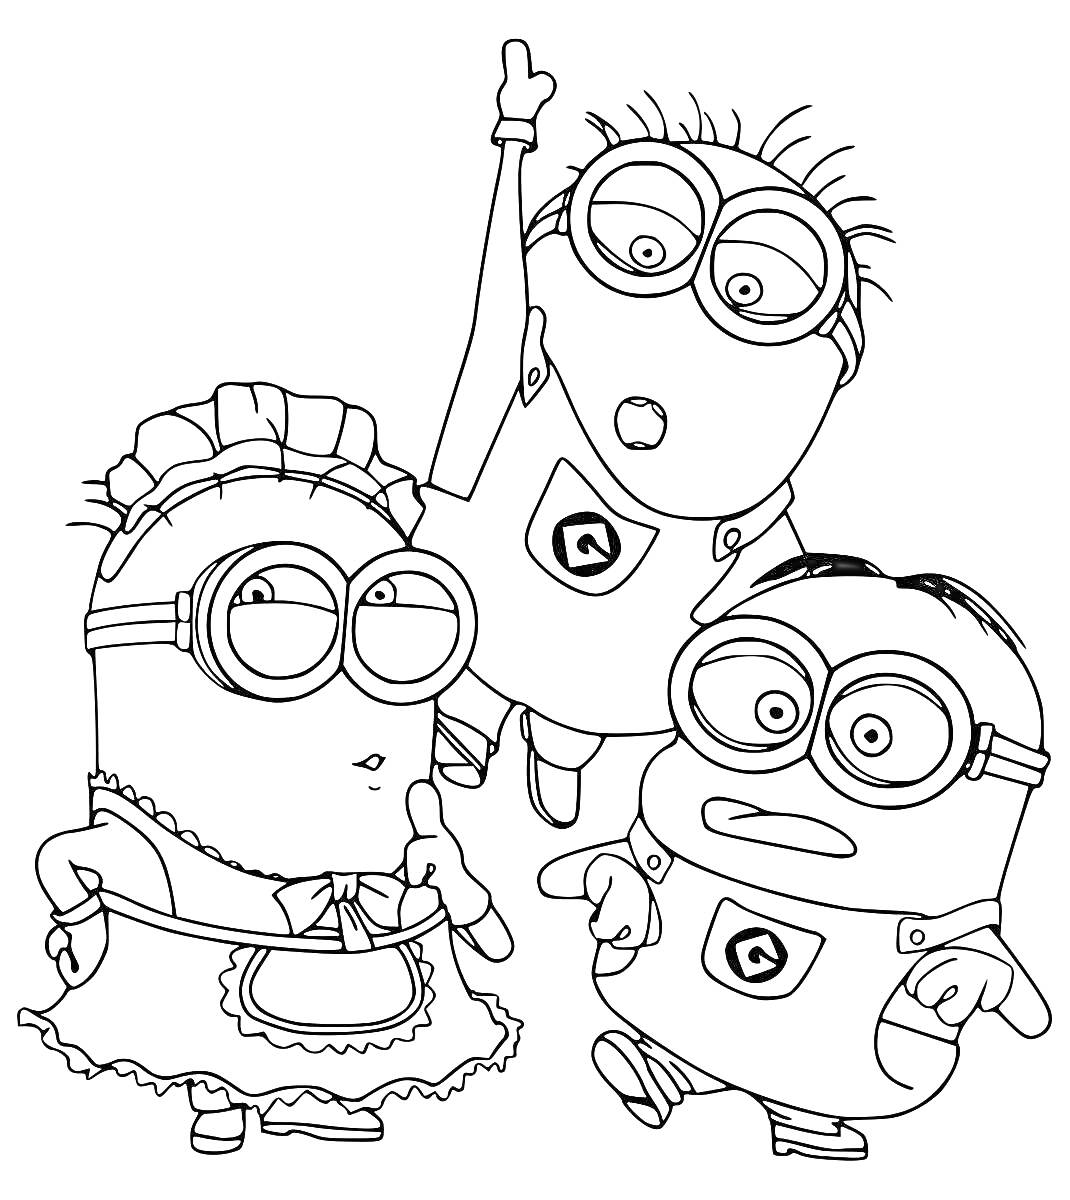 Три Миньона, один в костюме горничной, второй расправил руку вверх, третий с причёской и очками